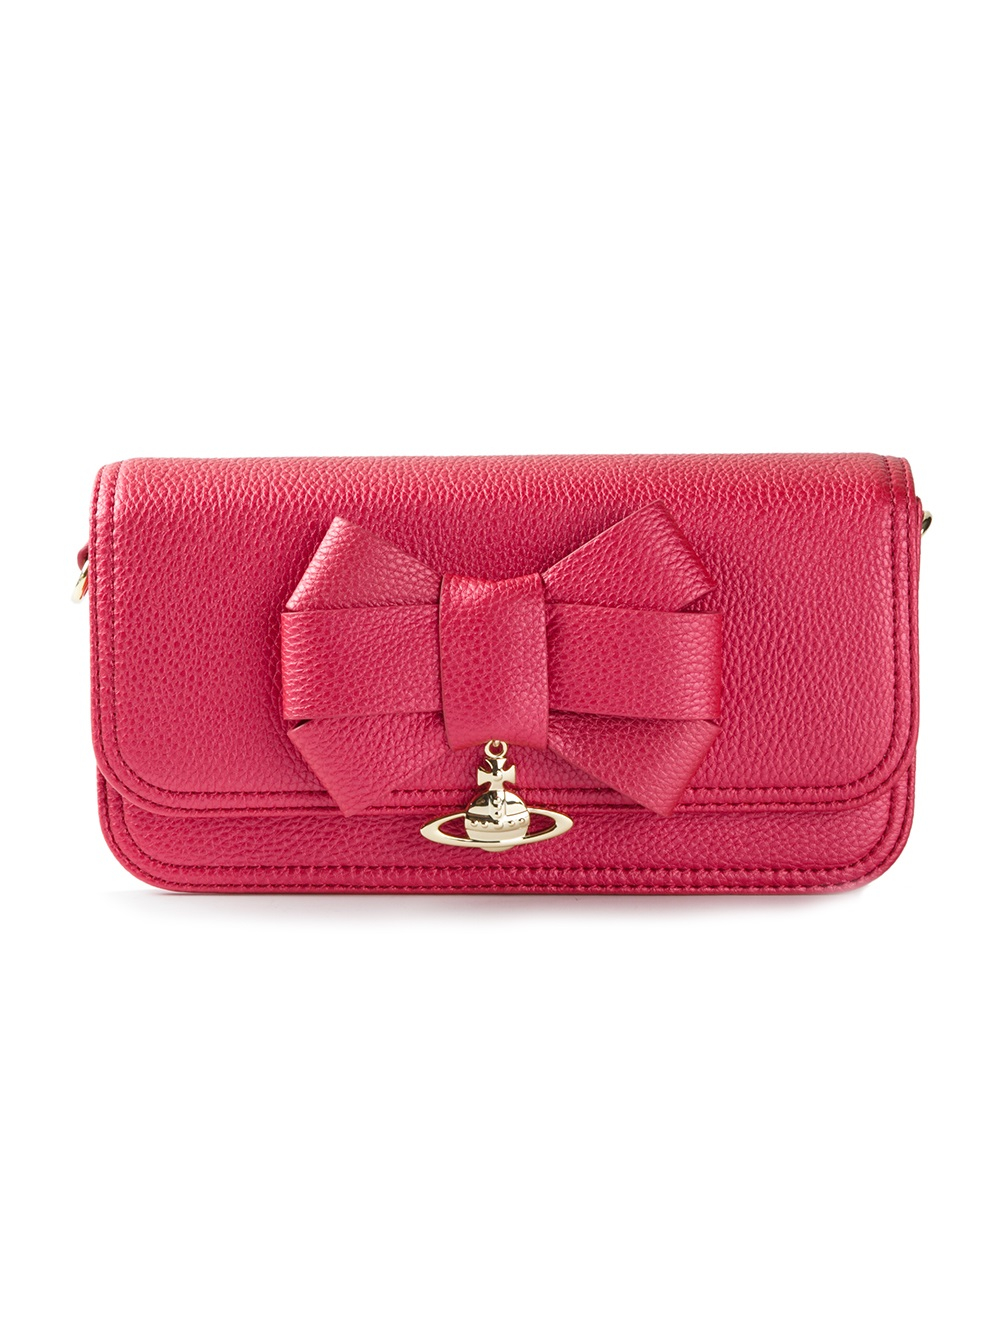 Vivienne Westwood Bow Detail Cross Body Bag in Pink (pink  purple)